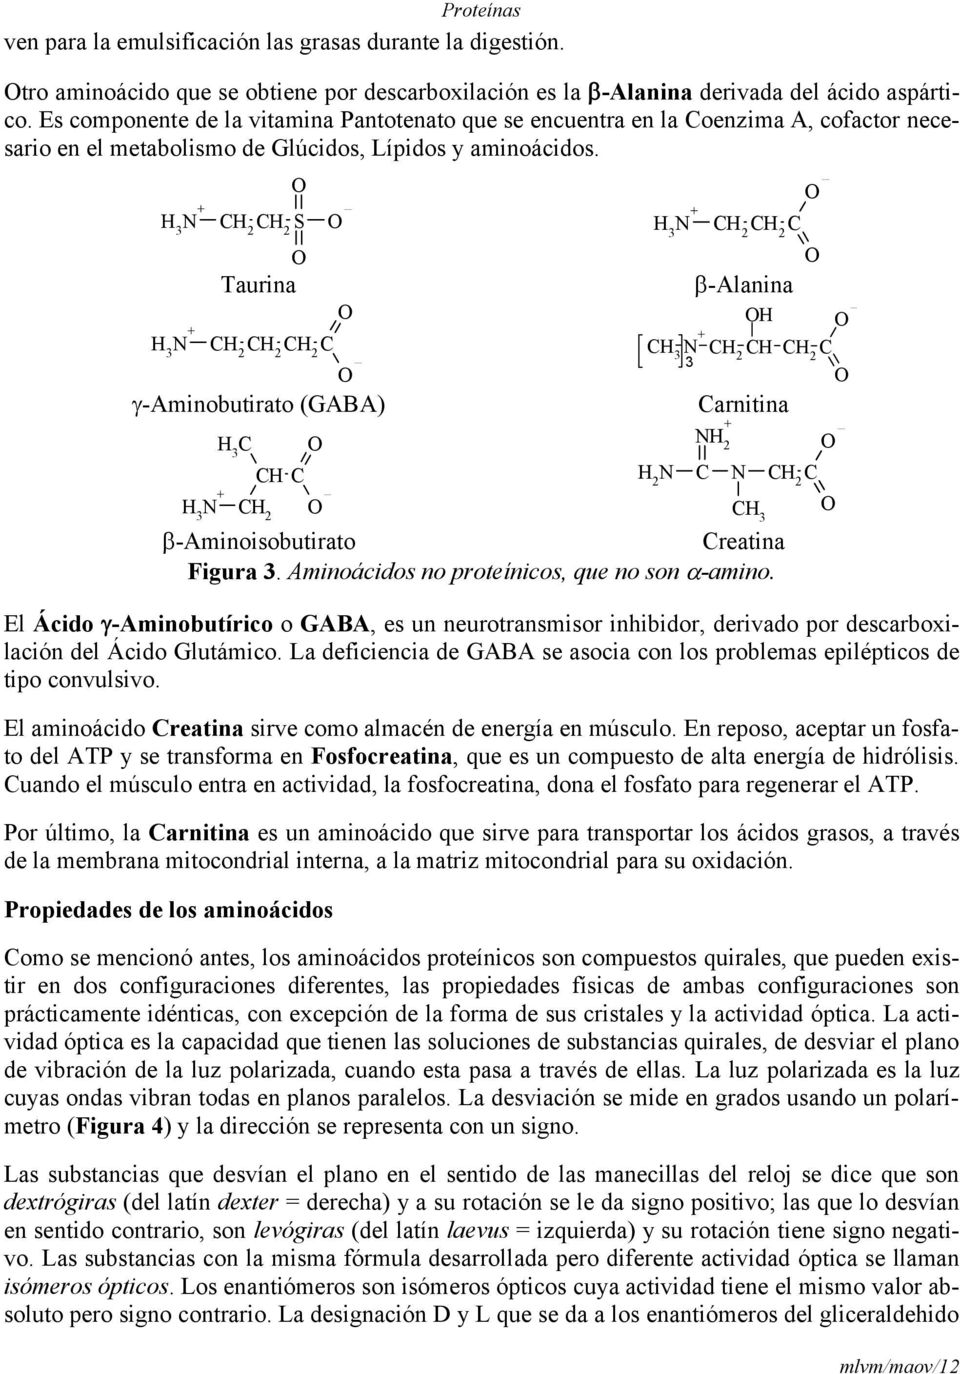 3 3 S Taurina -Aminobutirato (GABA) 3 3 3 3 3 -Alanina arnitina 2 2 3 -Aminoisobutirato reatina Figura 3. Aminoácidos no proteínicos, que no son -amino.